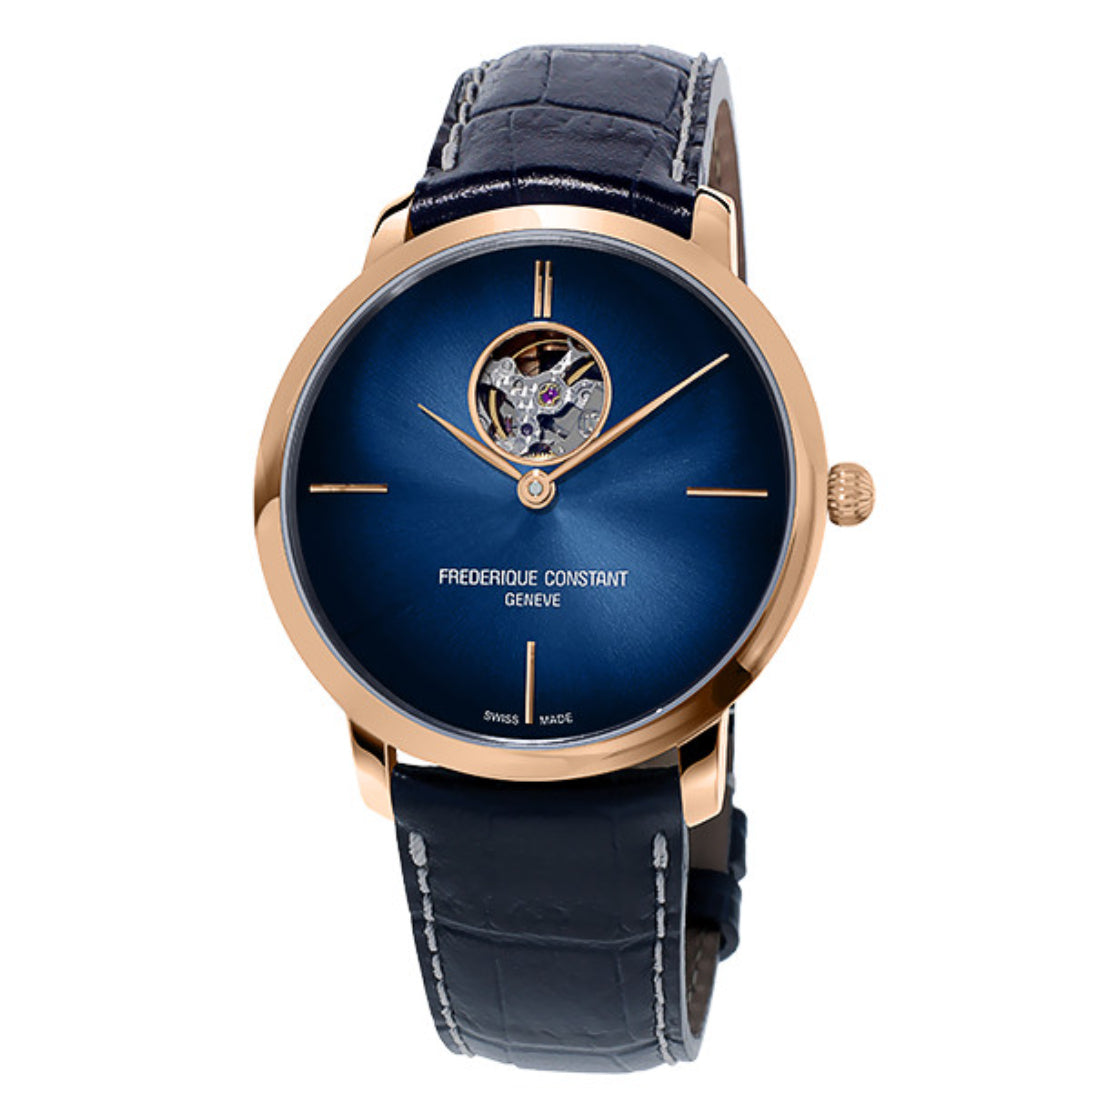 ساعة فريدريك كونستانت الرجالية بحركة أوتوماتيكية ولون مينا أزرق - FC-0185